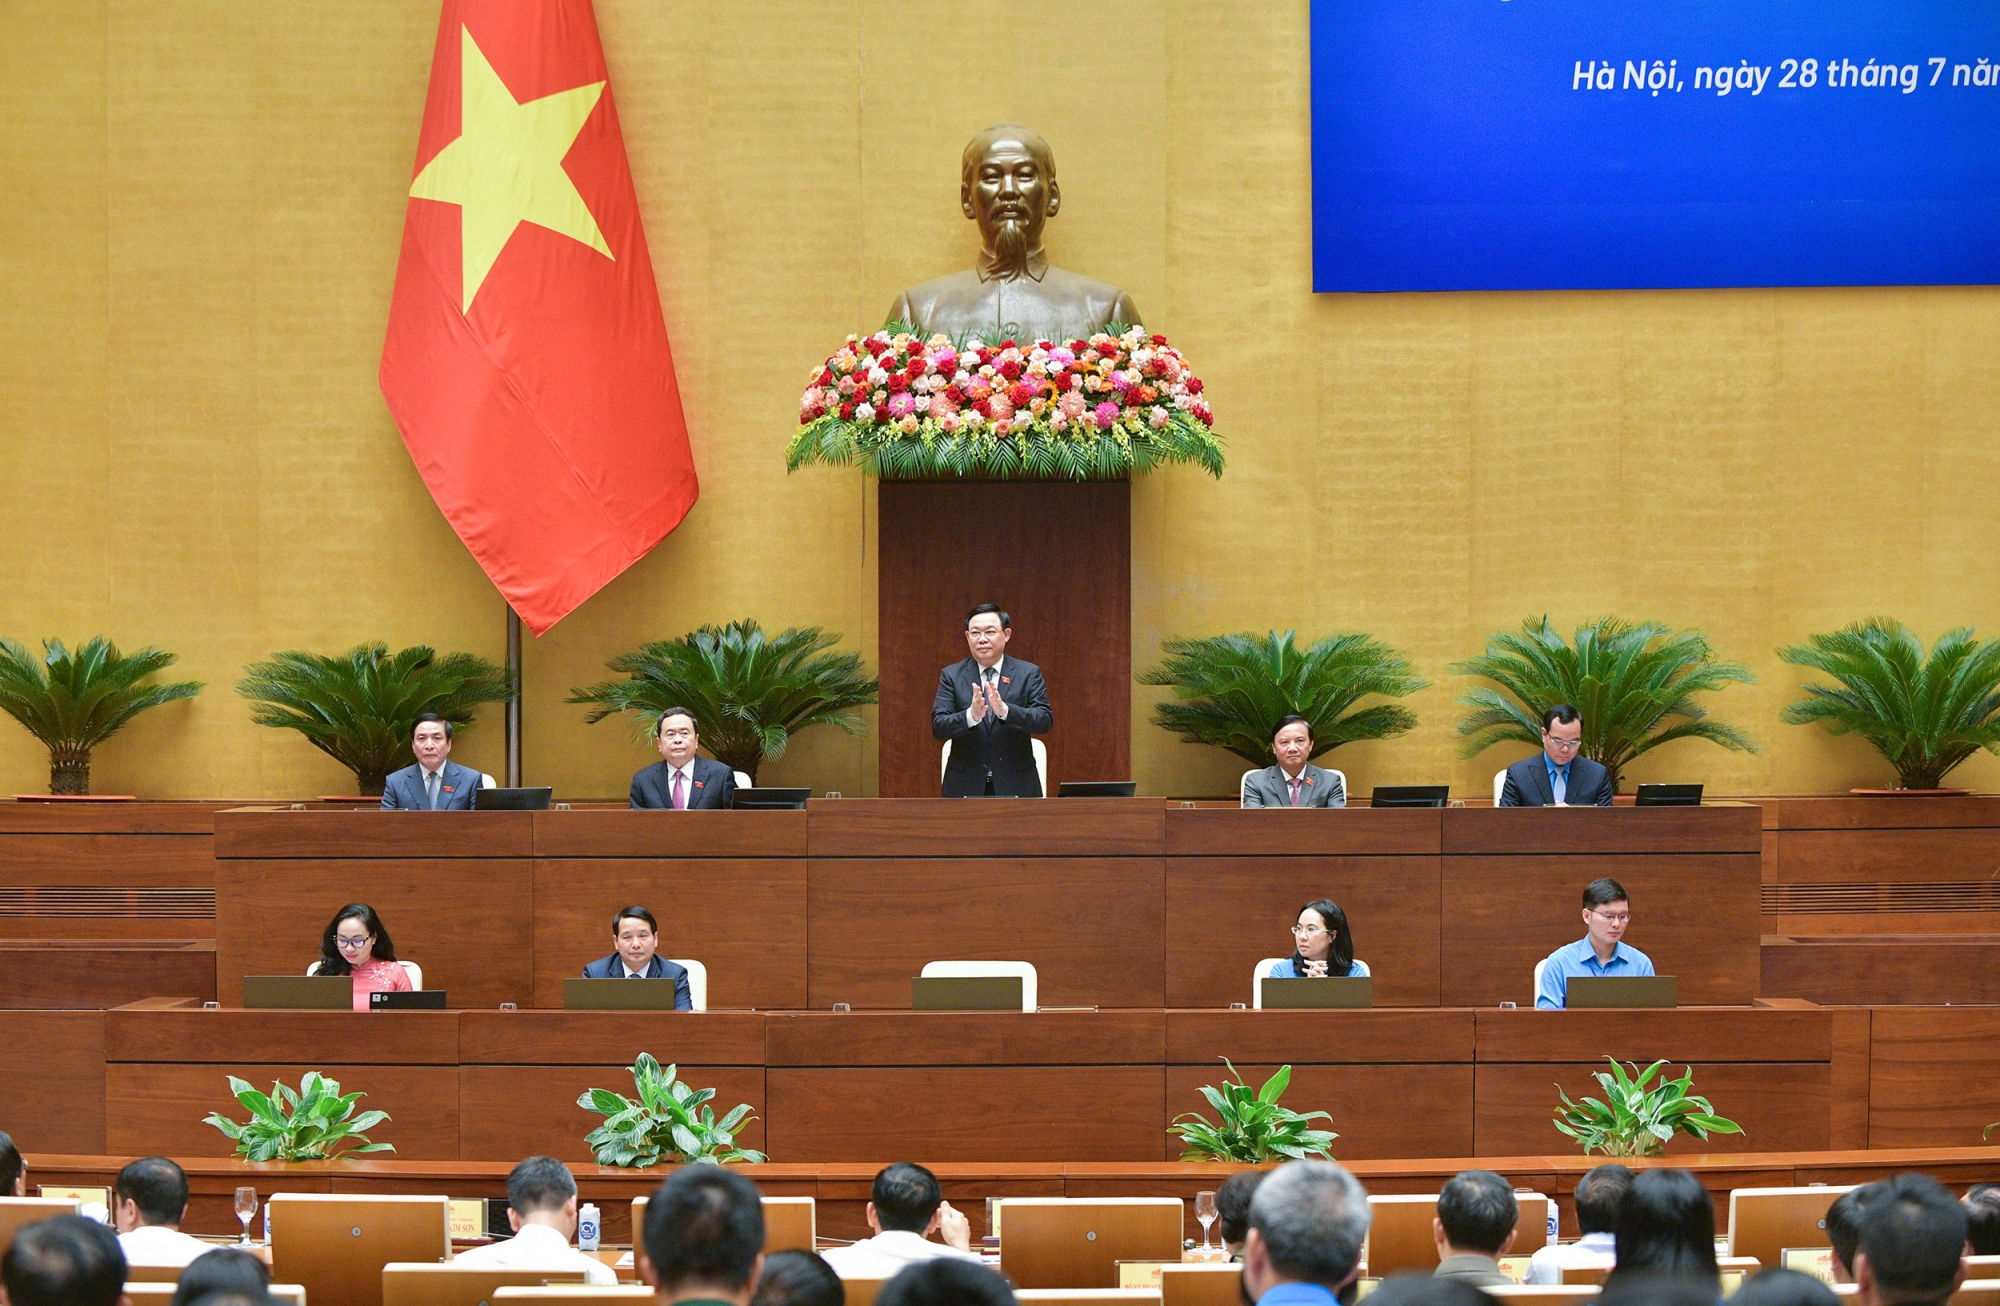 Đoàn viên Công đoàn Viên chức Việt Nam đề xuất hoàn thiện chính sách, pháp luật về khoa học công nghệ với Quốc hội